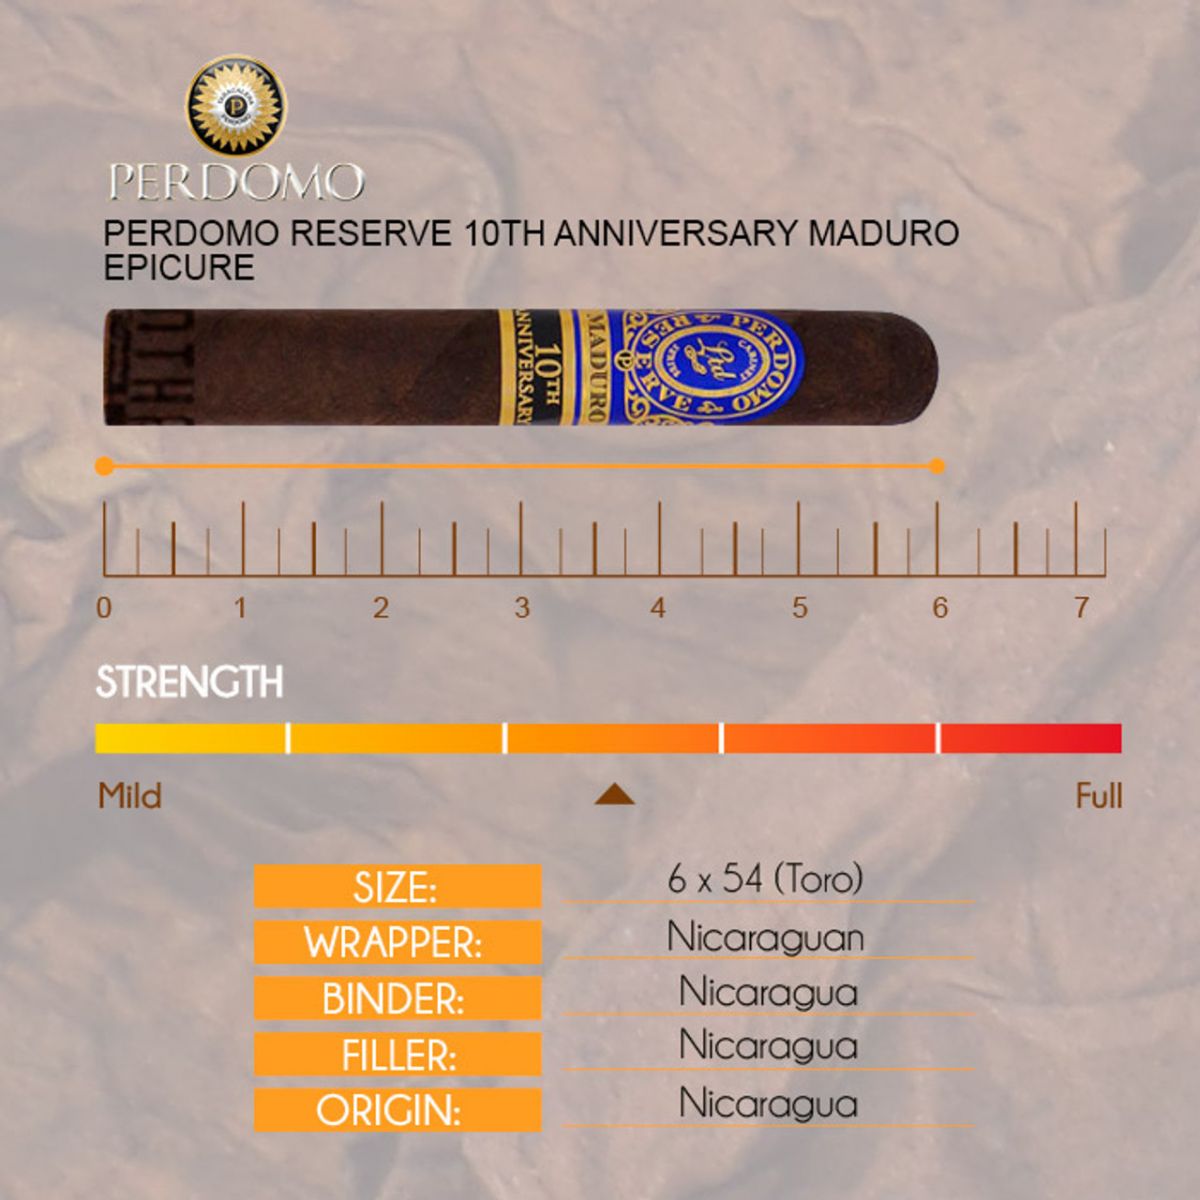 PERDOMO-RESERVE-10TH-ANNIVERSARY-MADURO-EPICURE-sai-gon